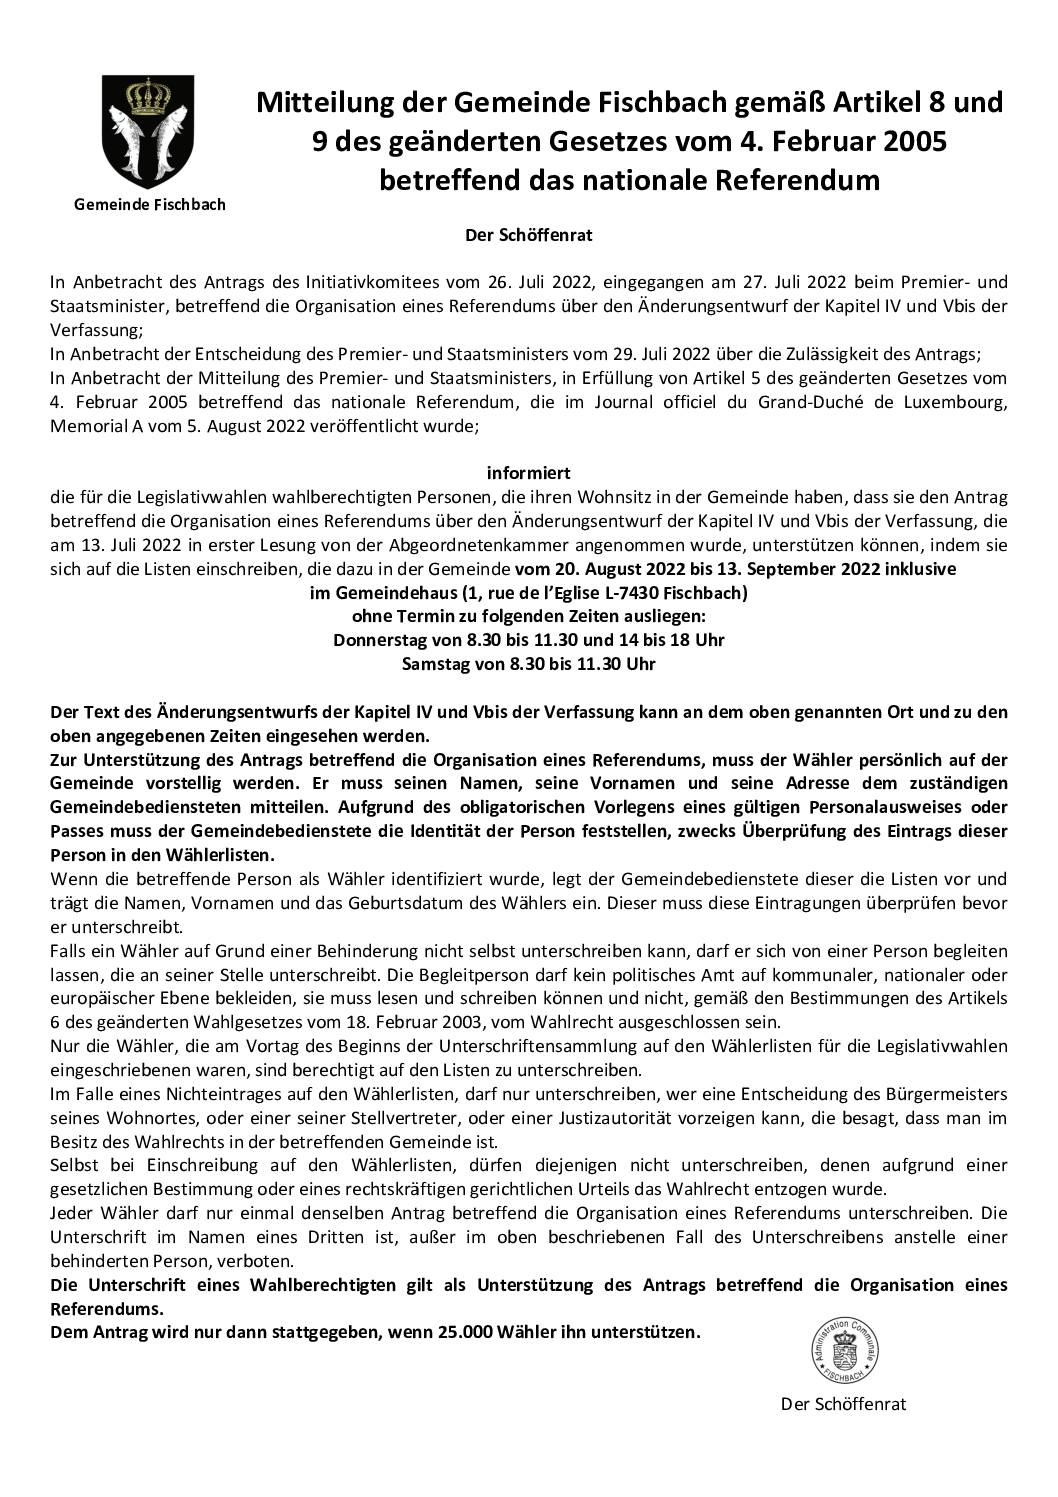 Communication de la Commune de Fischbach sur base des articles 8 et 9 de la loi modifiée du 4 février 2005 relative au référendum au niveau national